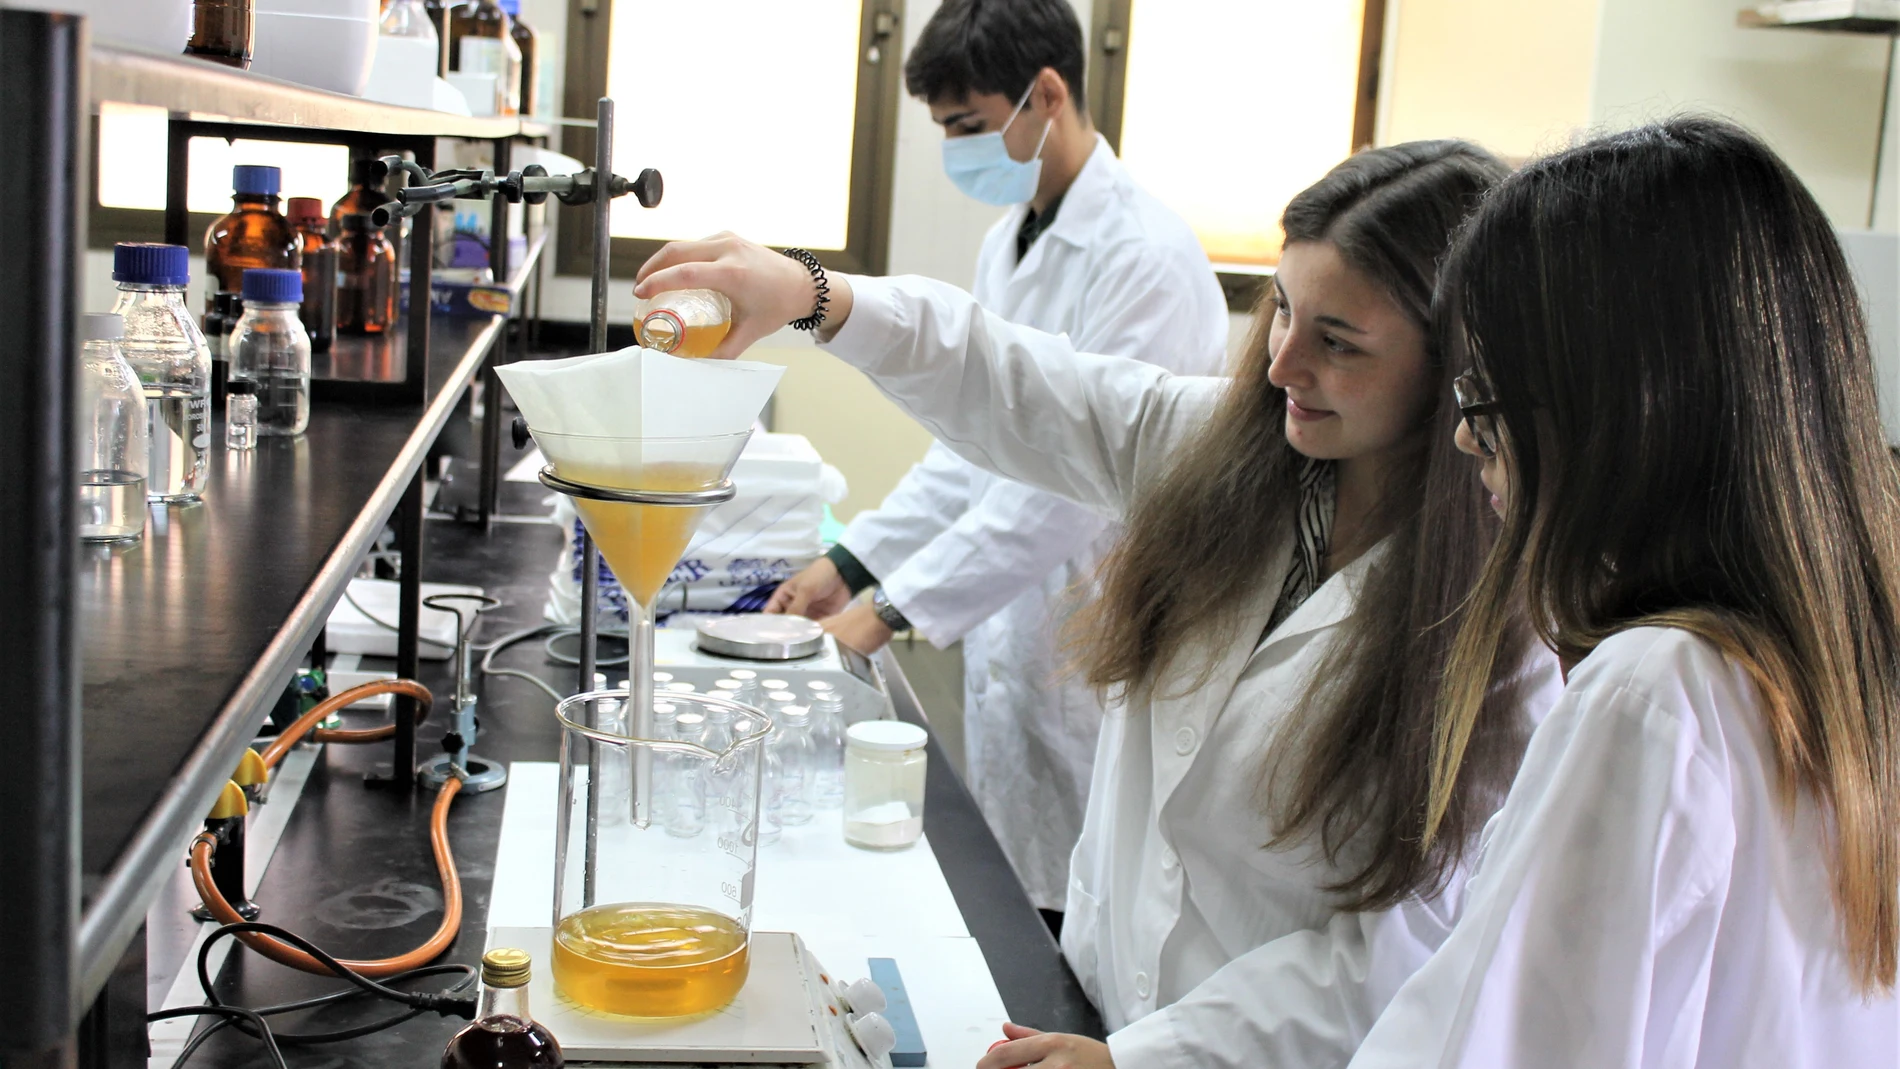 Estudiantes del Grado de Ciencia y Tecnología de la Universidad de León